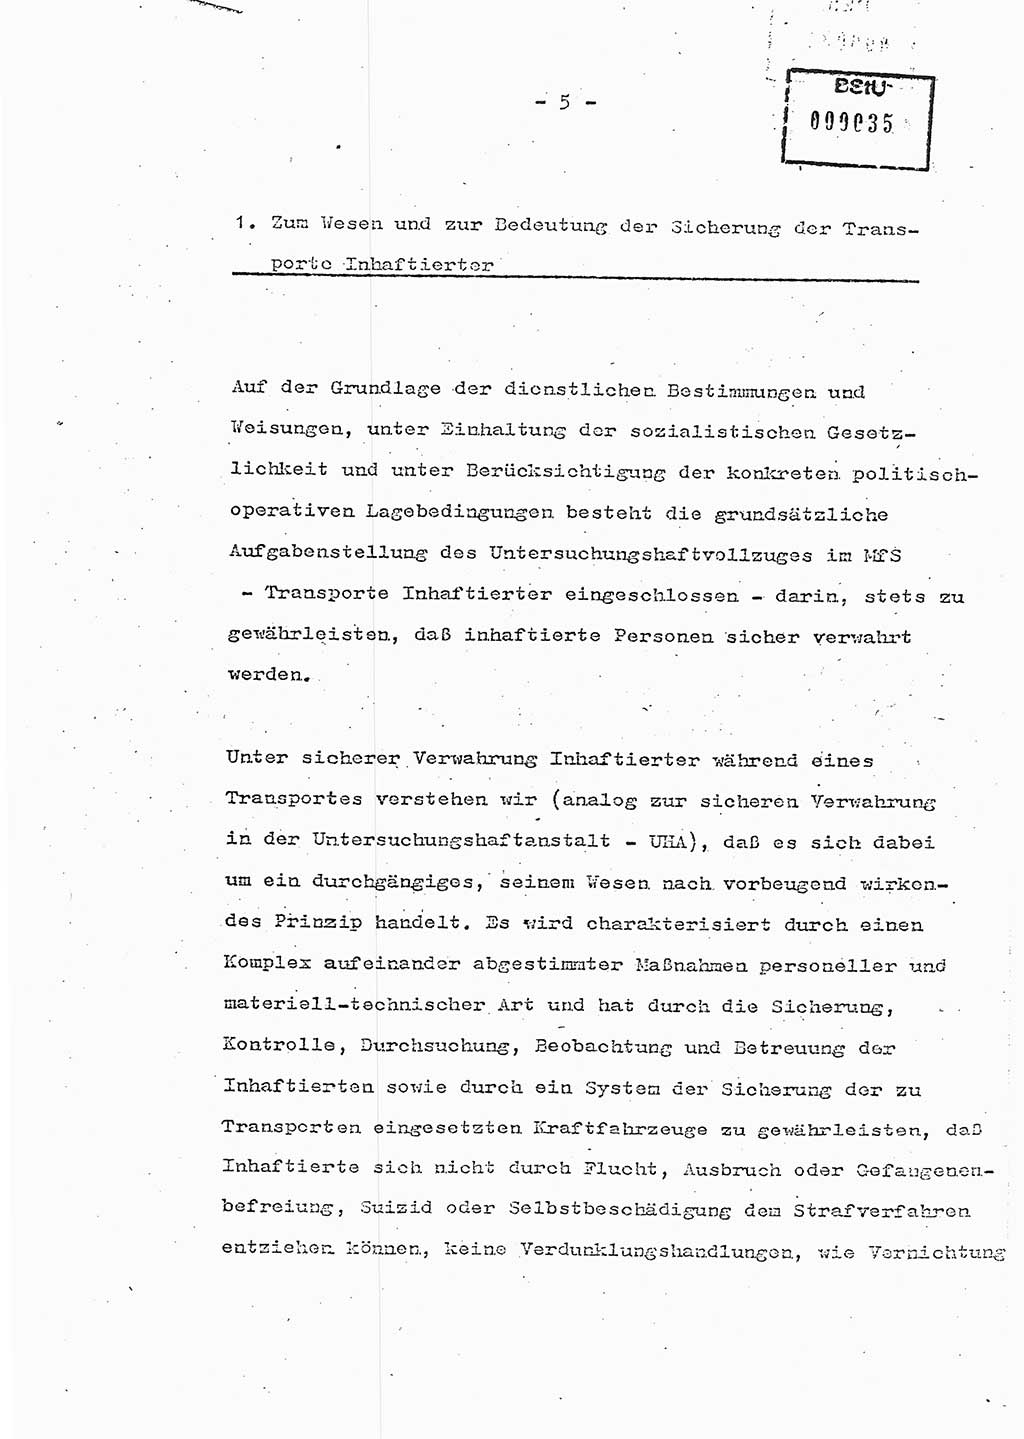 Schulungsmaterial Exemplar-Nr.: 7, Ministerium für Staatssicherheit [Deutsche Demokratische Republik (DDR)], Abteilung (Abt.) ⅩⅣ, Berlin 1986, Seite 5 (Sch.-Mat. Expl. 7 MfS DDR Abt. ⅩⅣ /86 1986, S. 5)